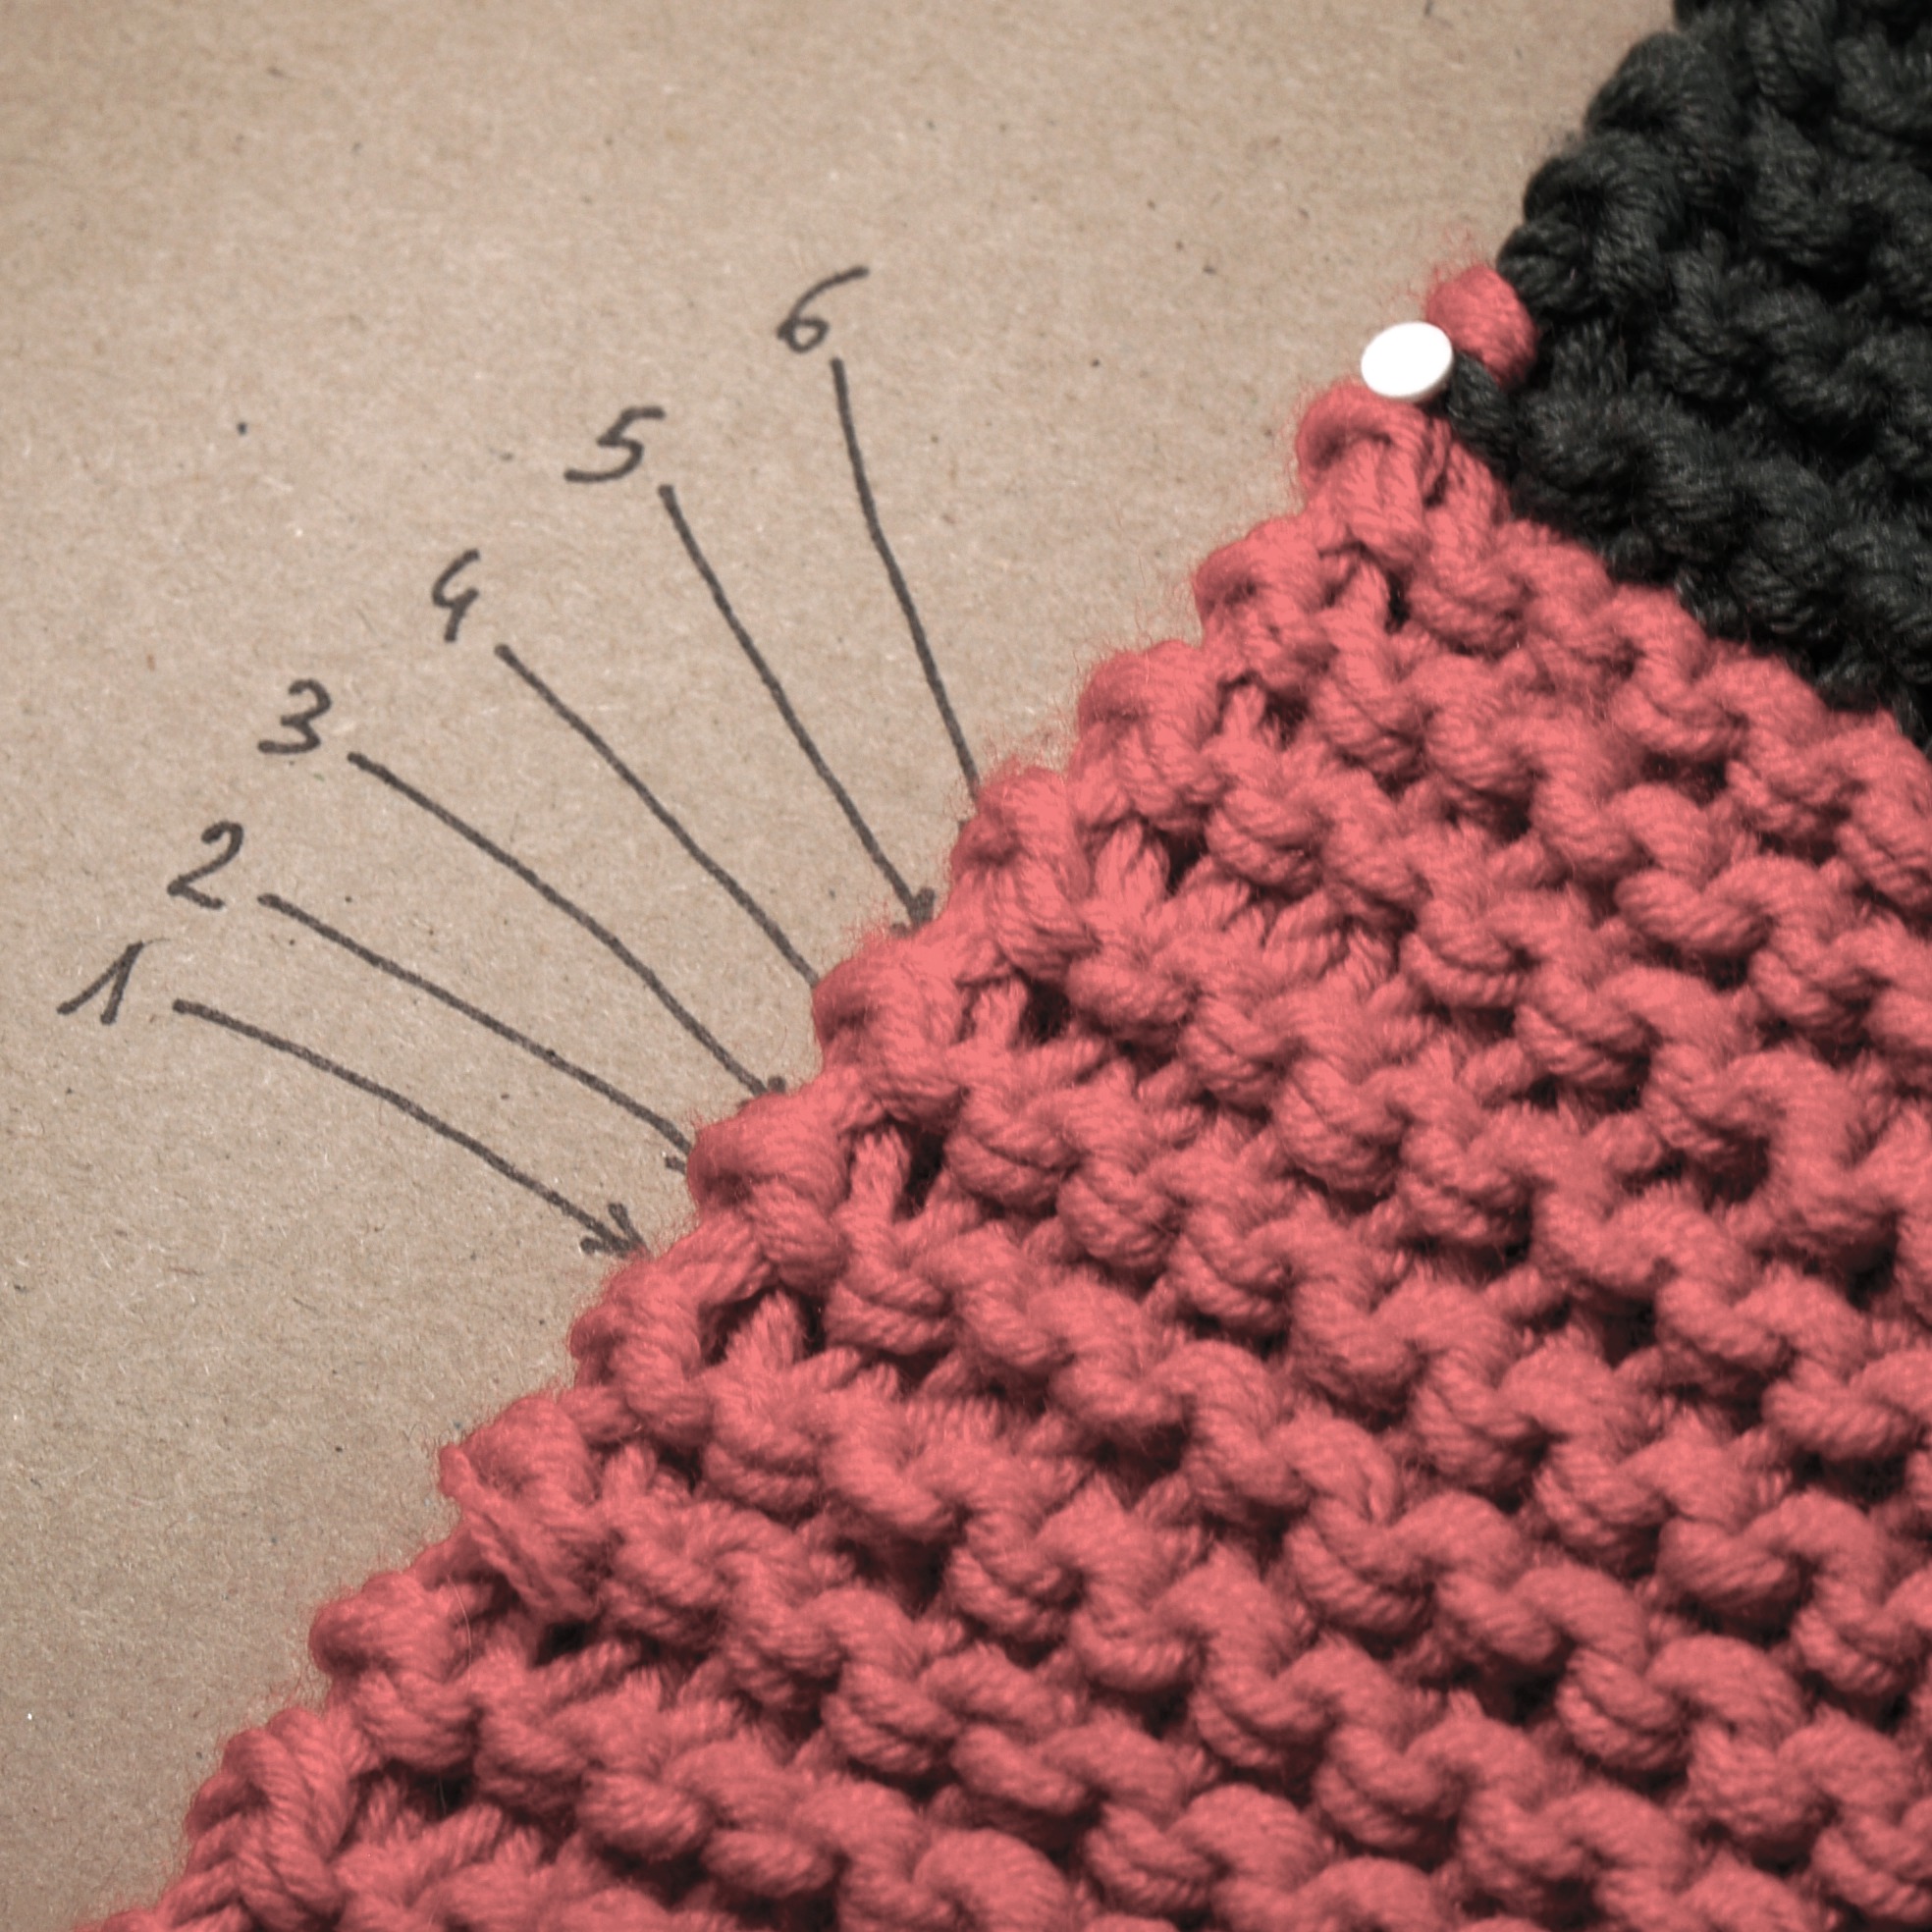 Compte rang : comment utiliser des comptes-rang au tricot 